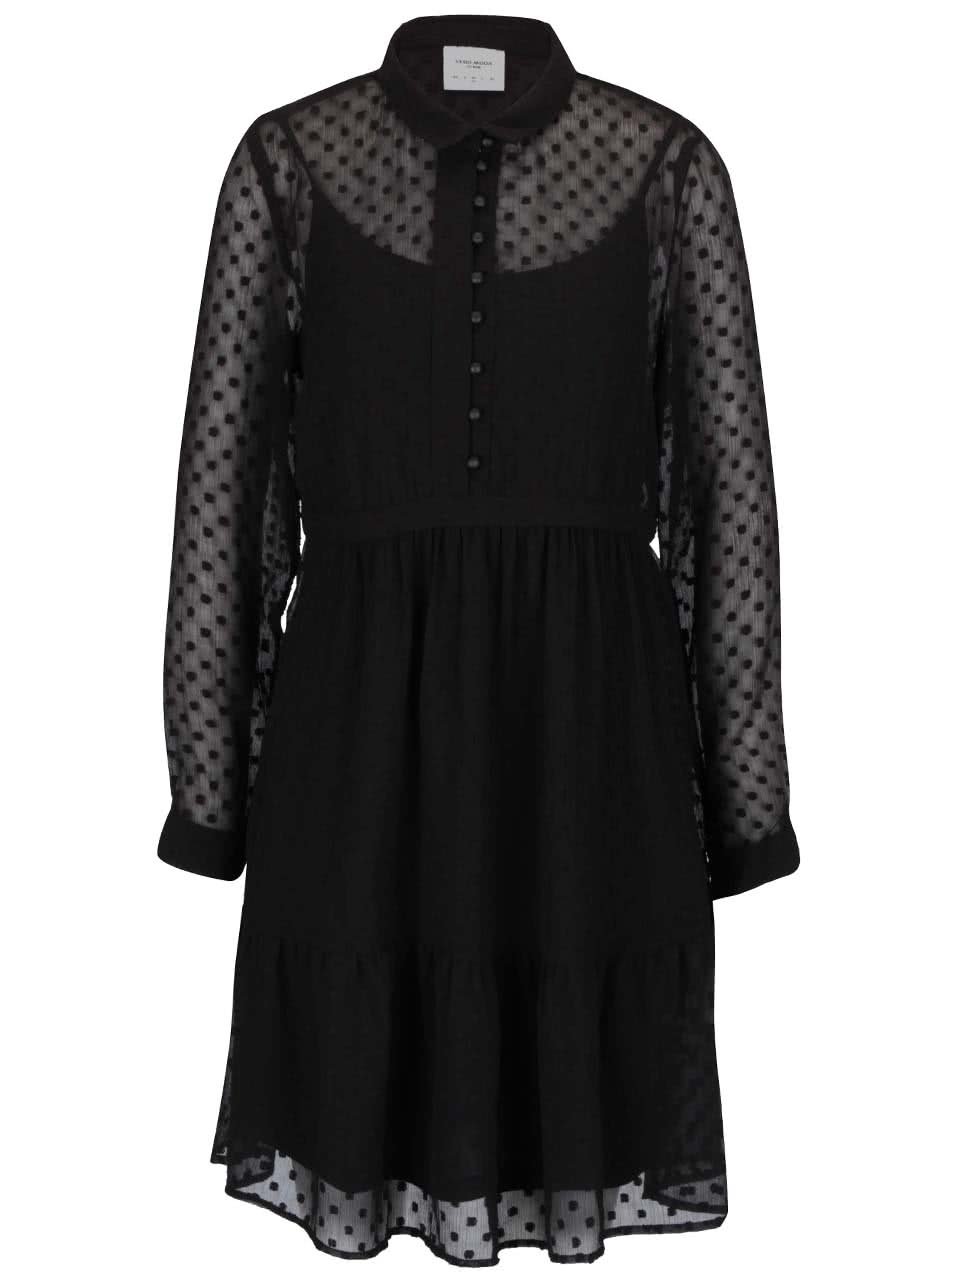 Černé volnější průsvitné šaty s knoflíky a spodničkou Vero Moda Lucy